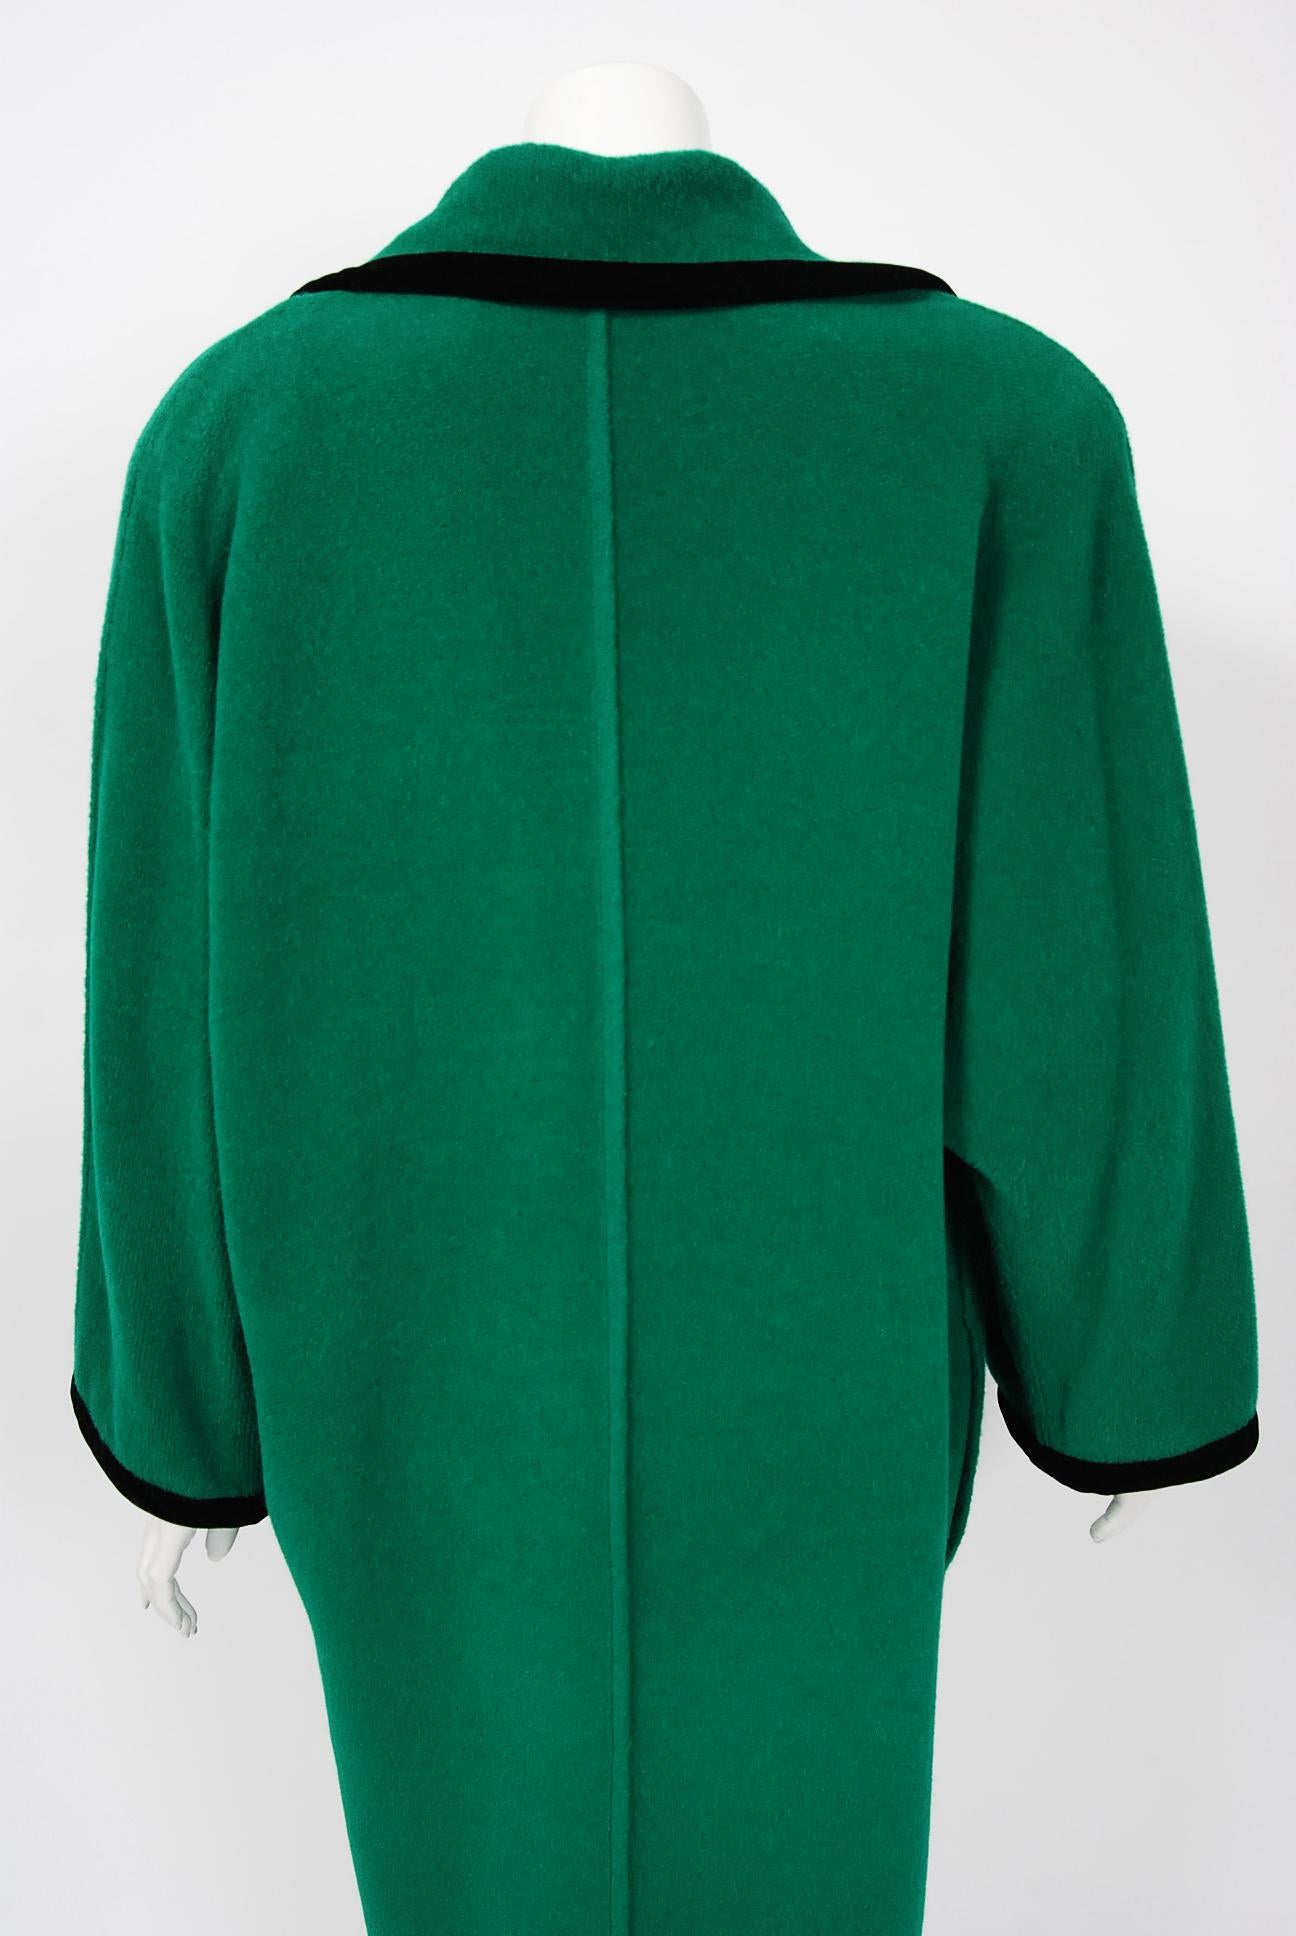 1980's Emanuel Ungaro Shamrock-Green Wool Wide Collar Sweater Jacket Coat 1